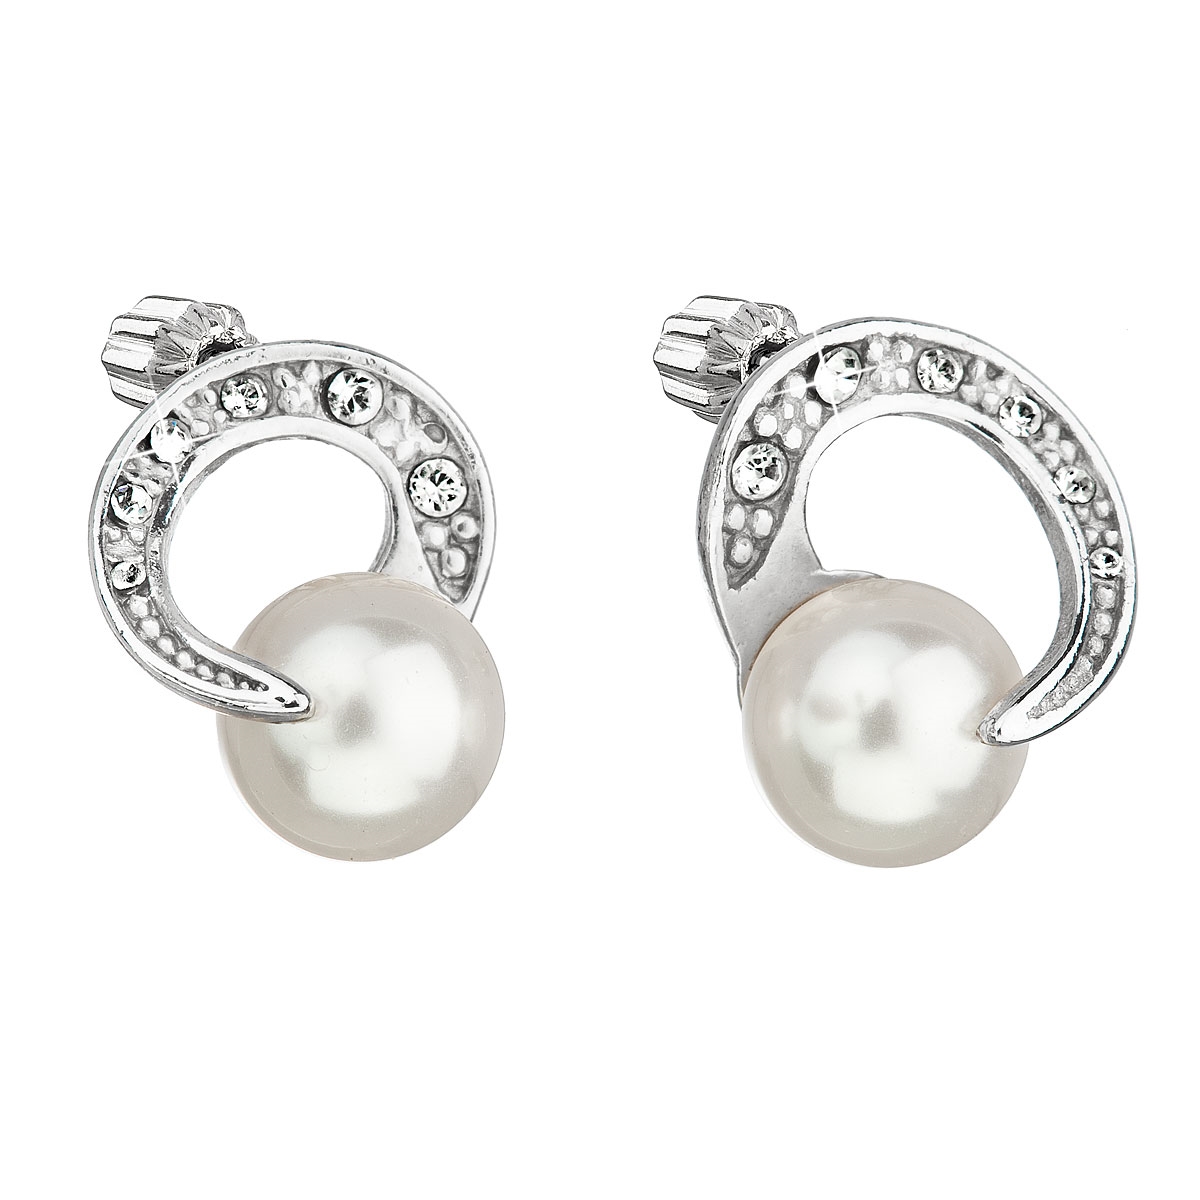 Strieborné náušnice s perlami a kamienkami Crystals from Swarovski ® White